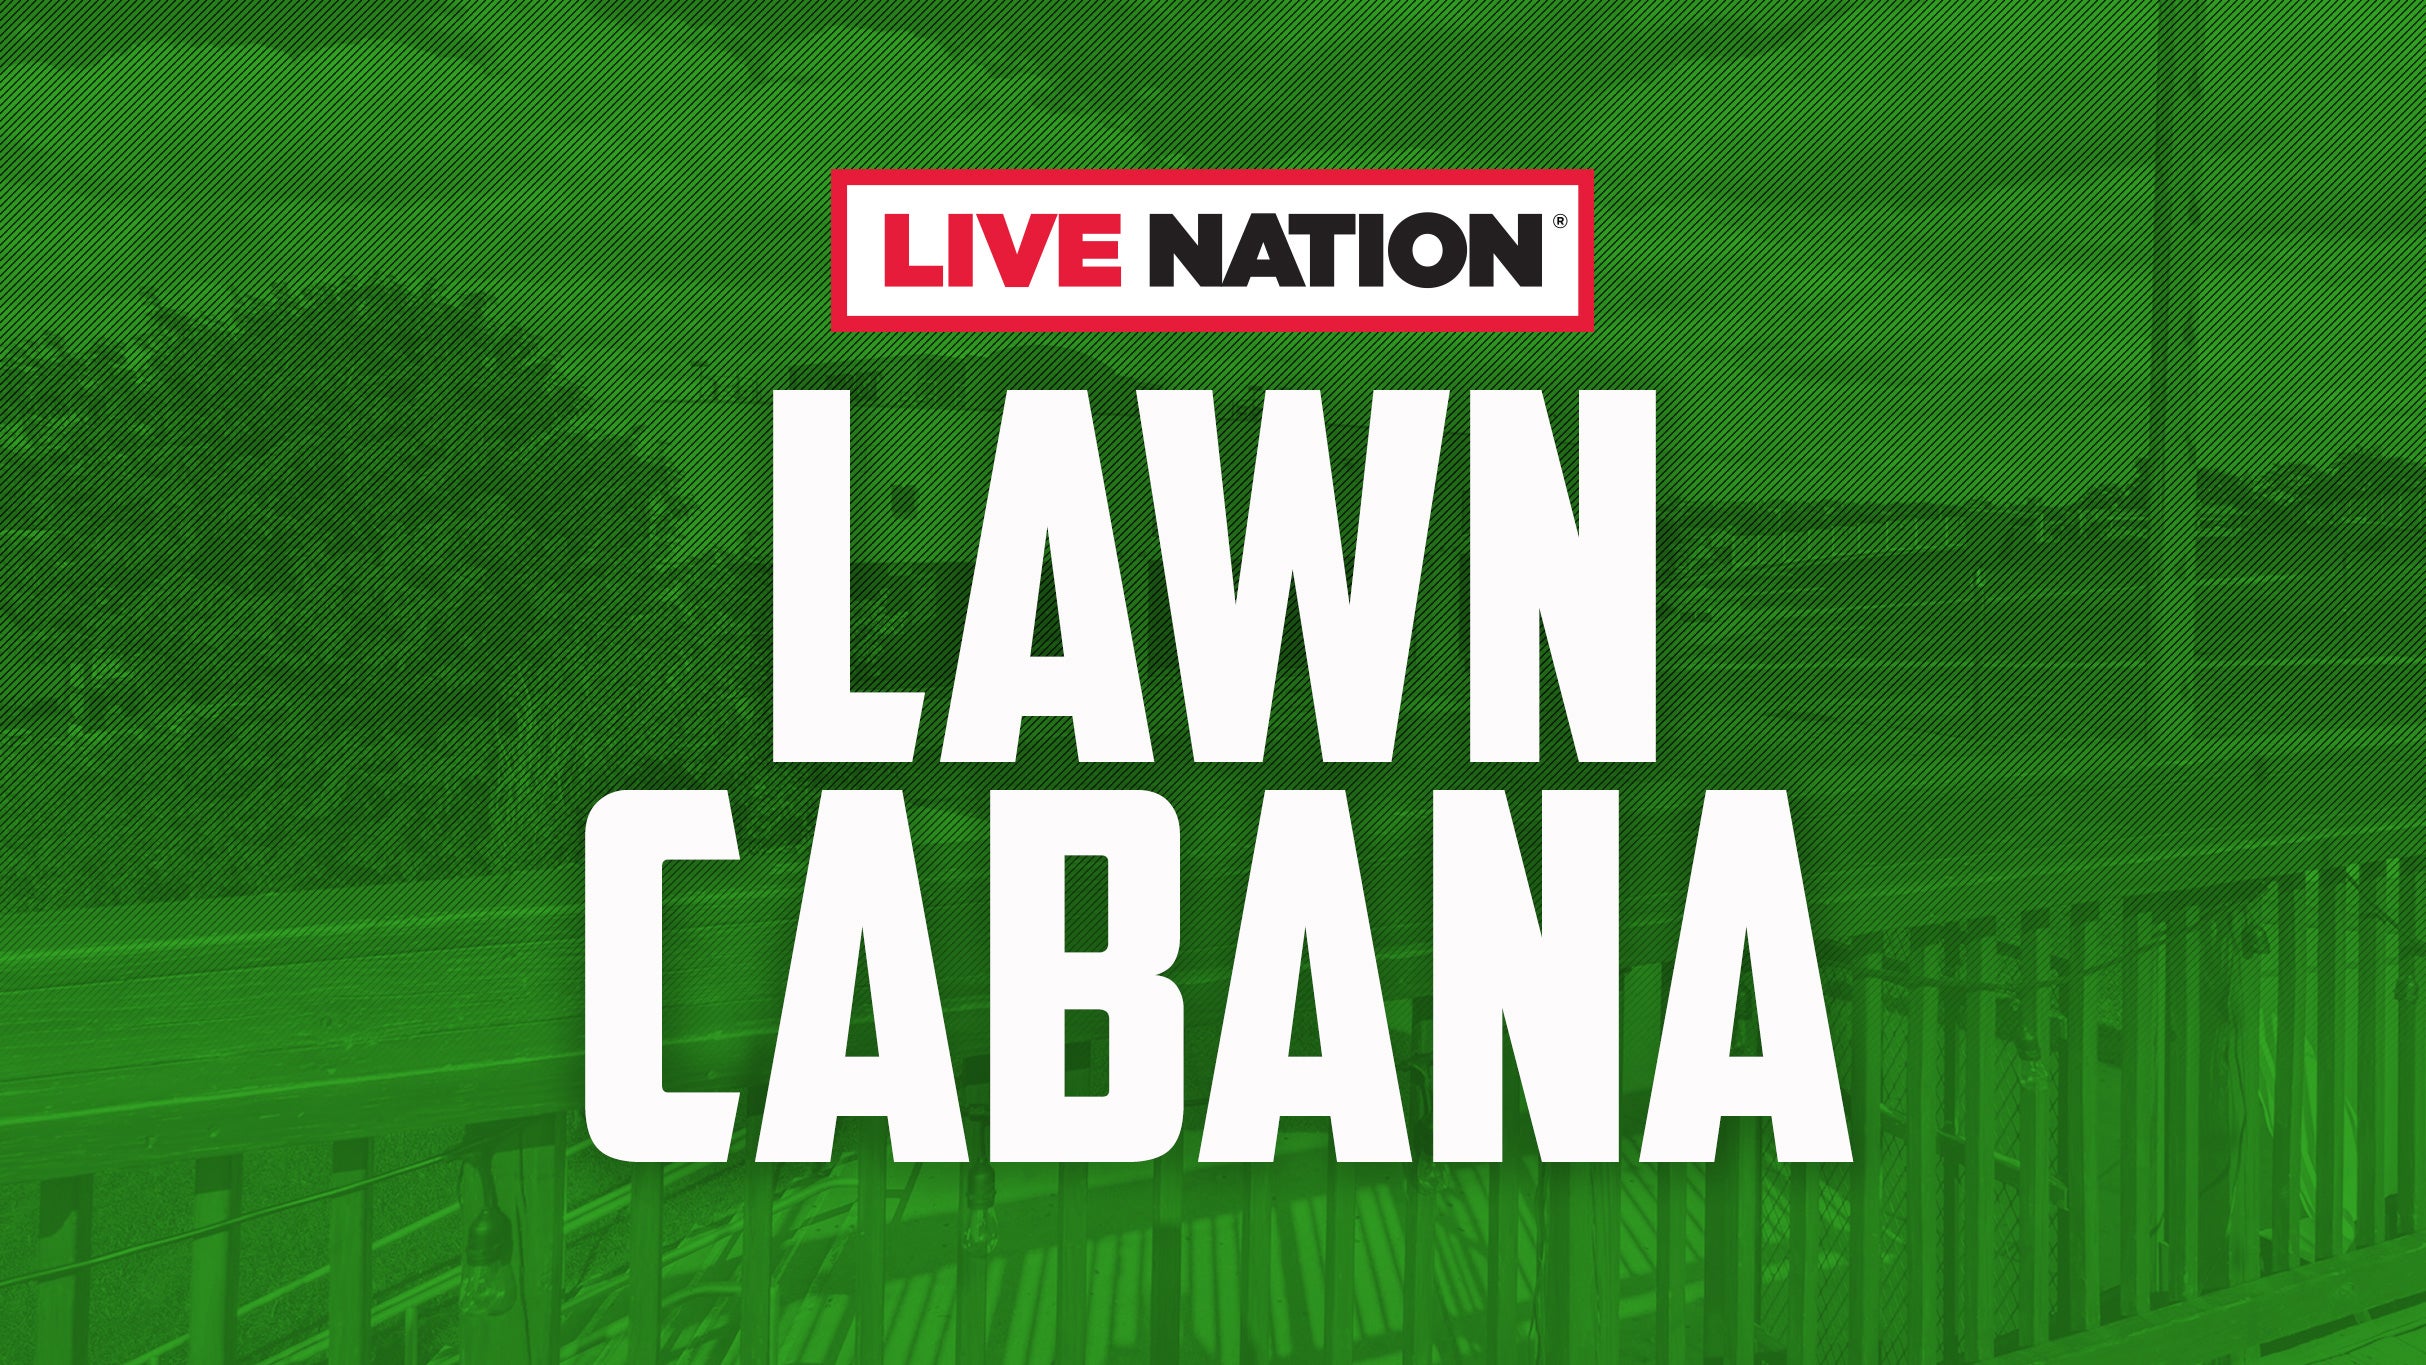 Live Nation Lawn Cabana presale information on freepresalepasswords.com